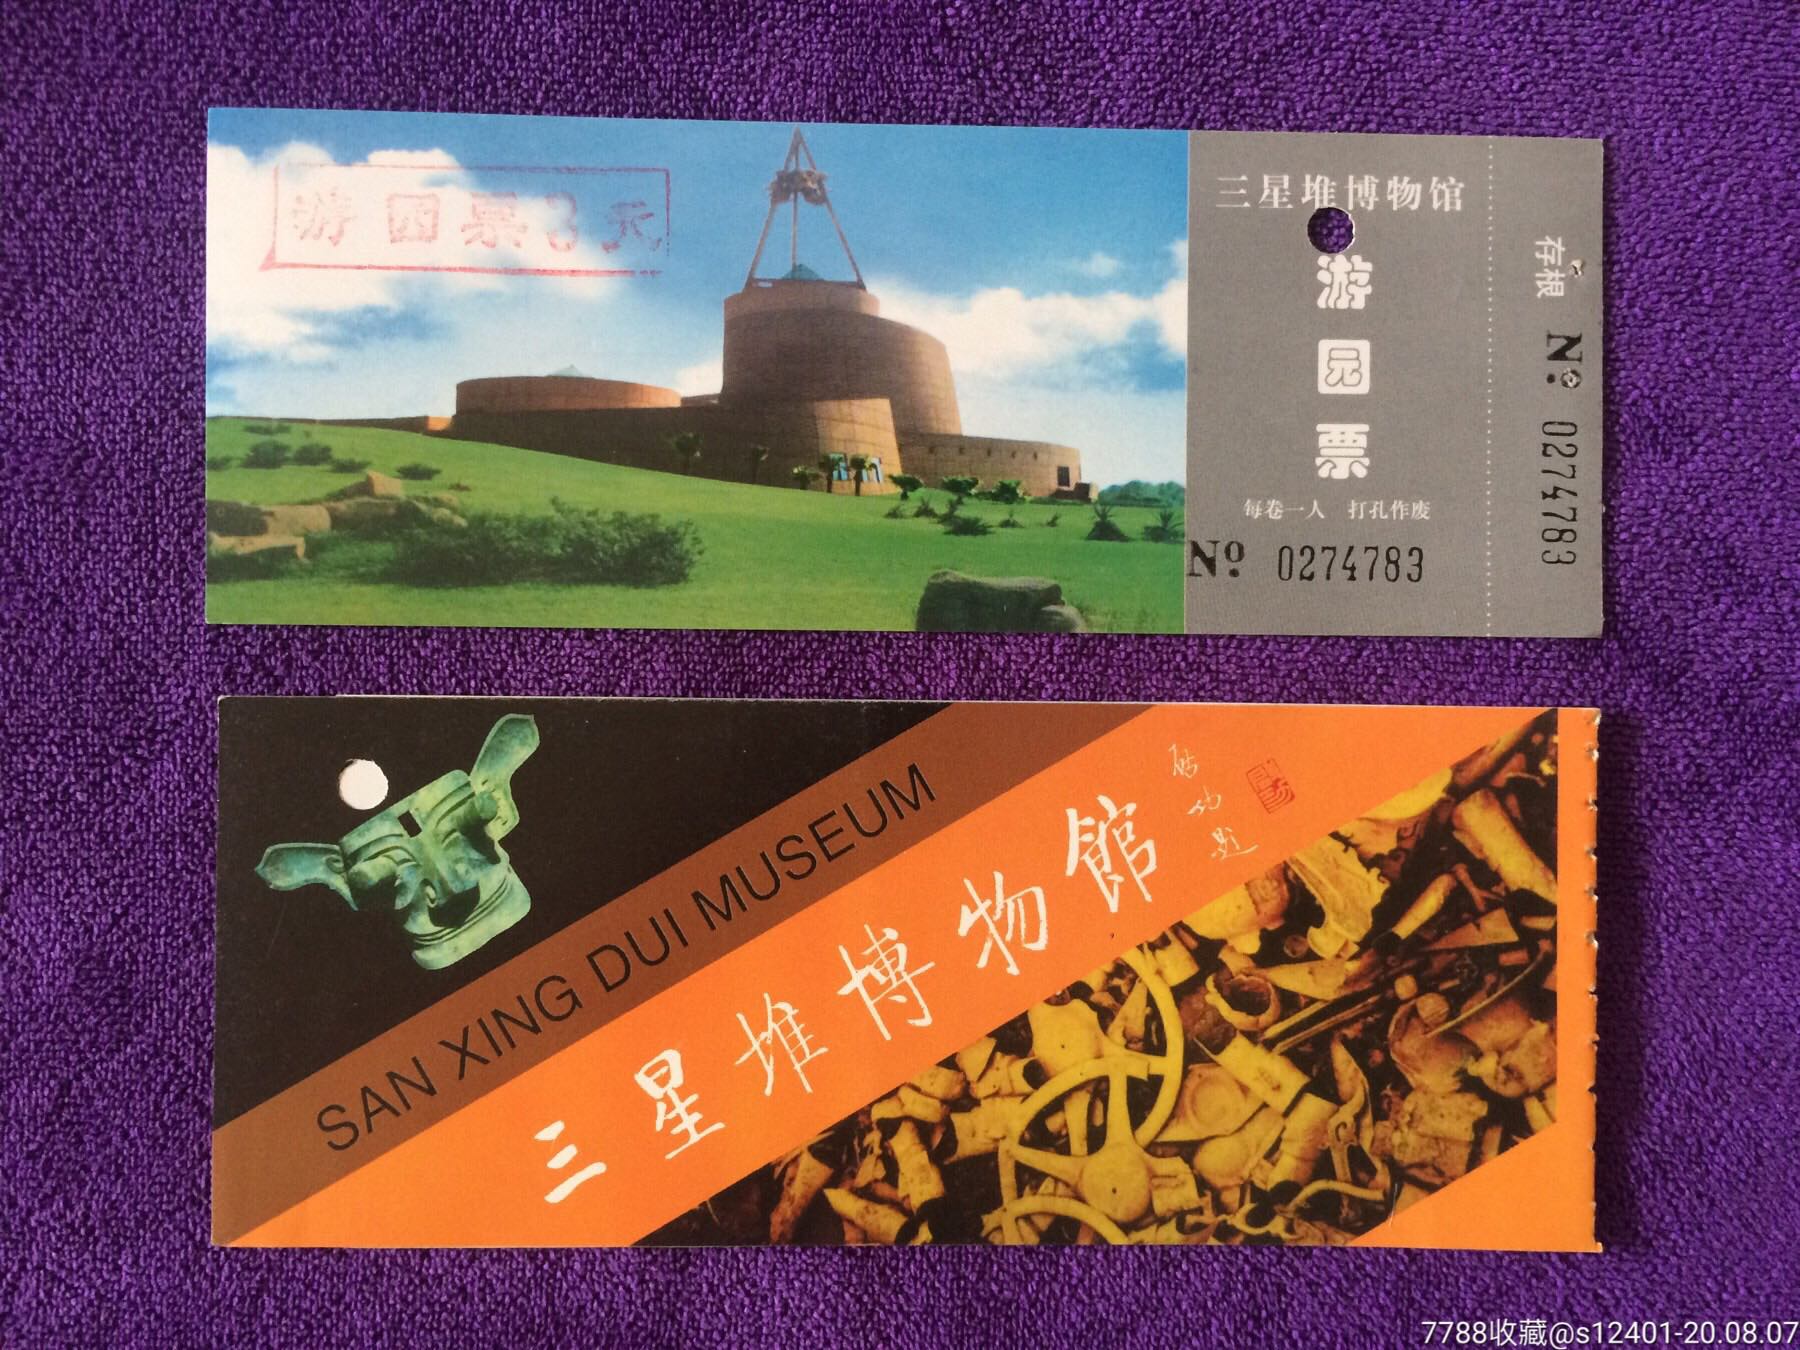 四川三星堆博物馆门票图片